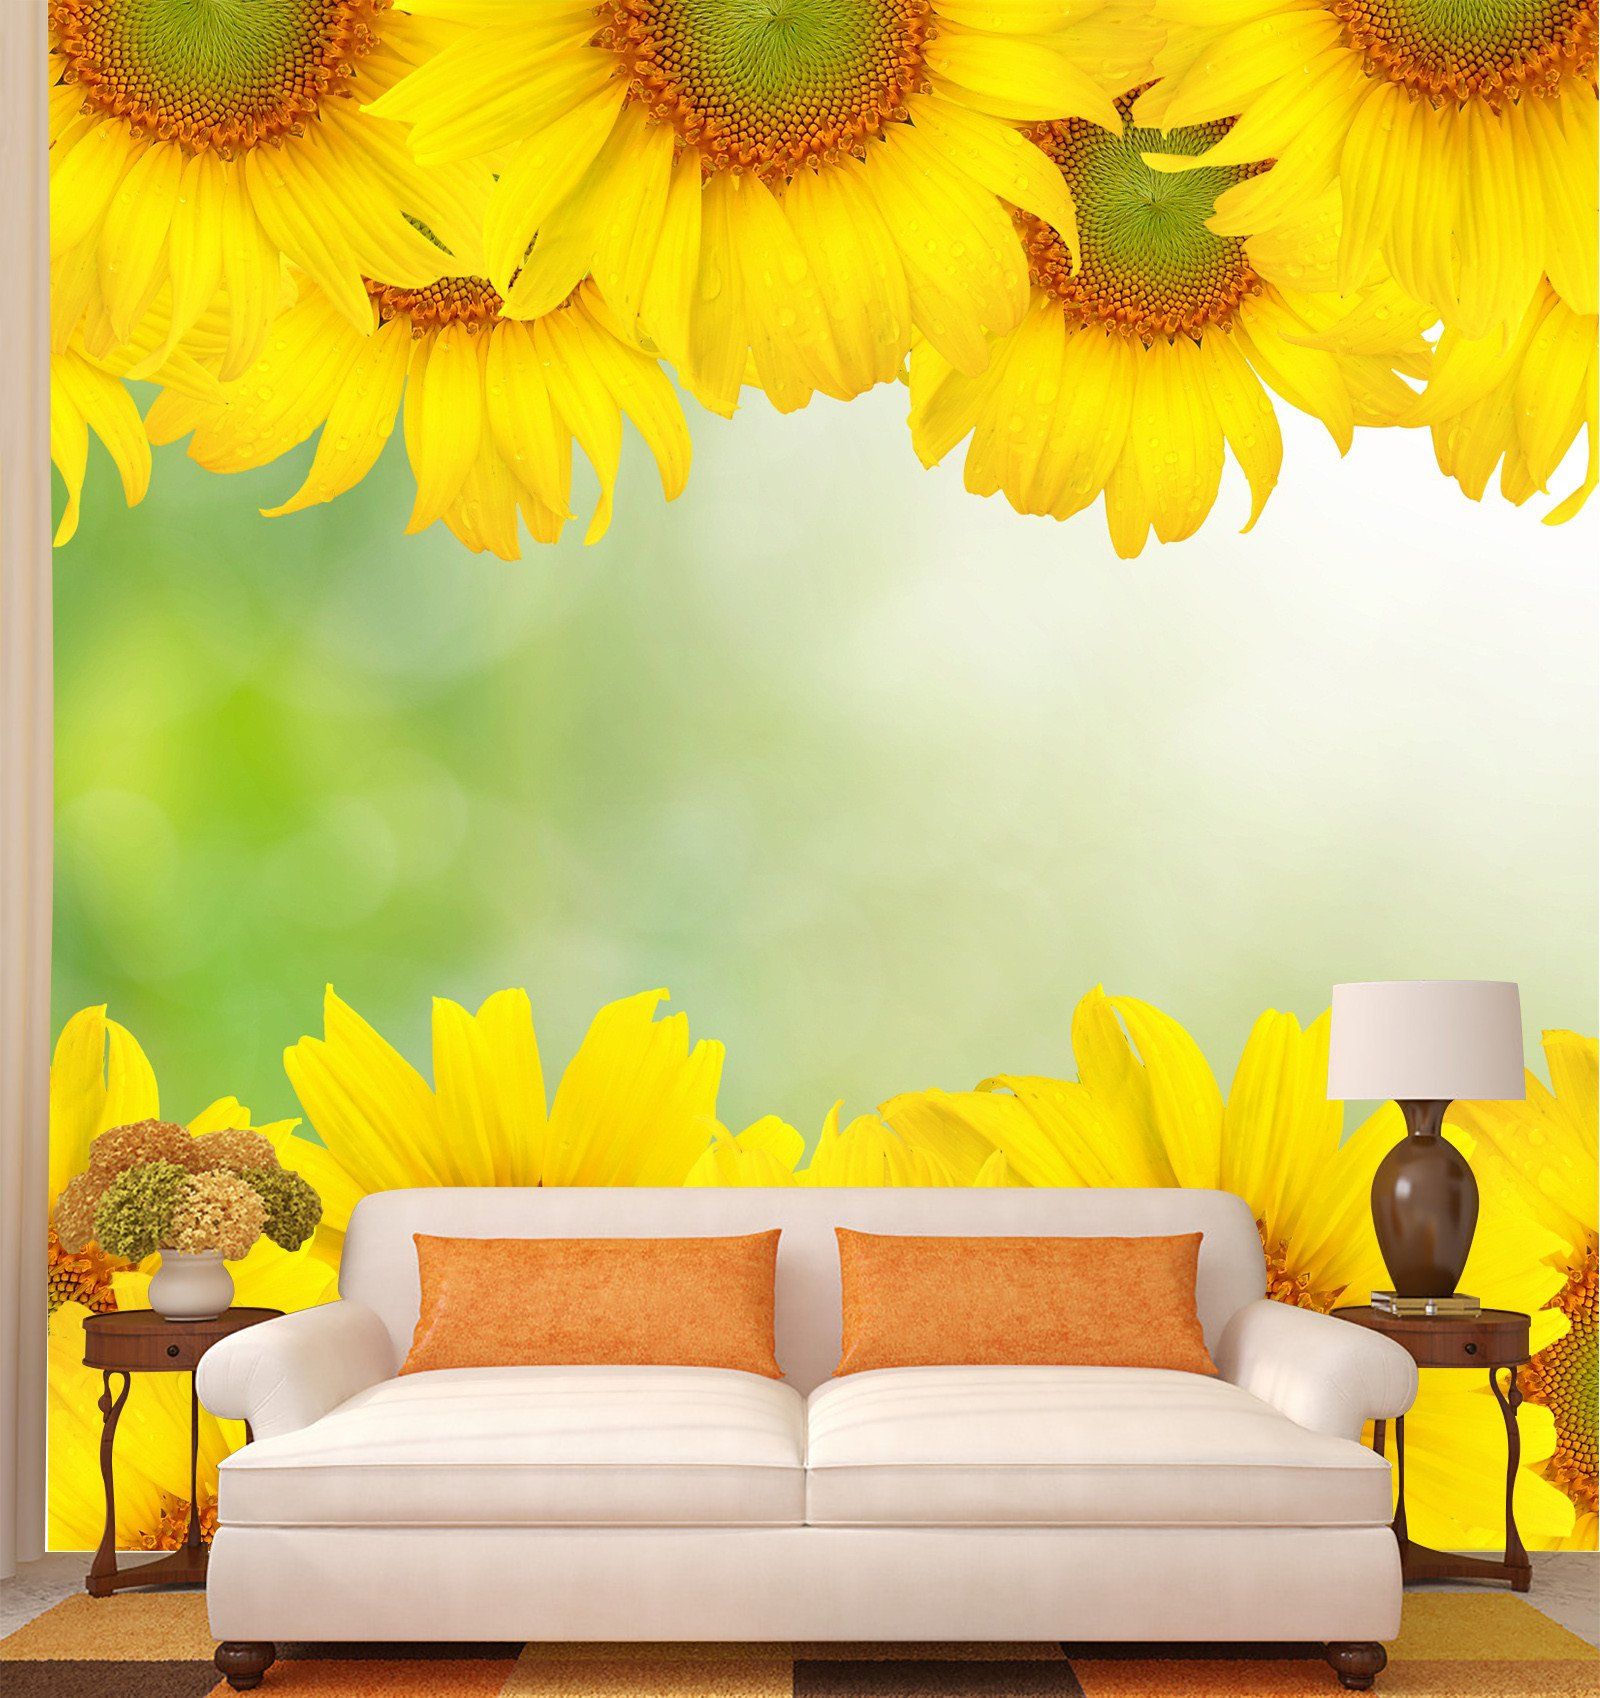 3D Sunflower Sunshine 294 Wallpaper AJ Wallpapers 